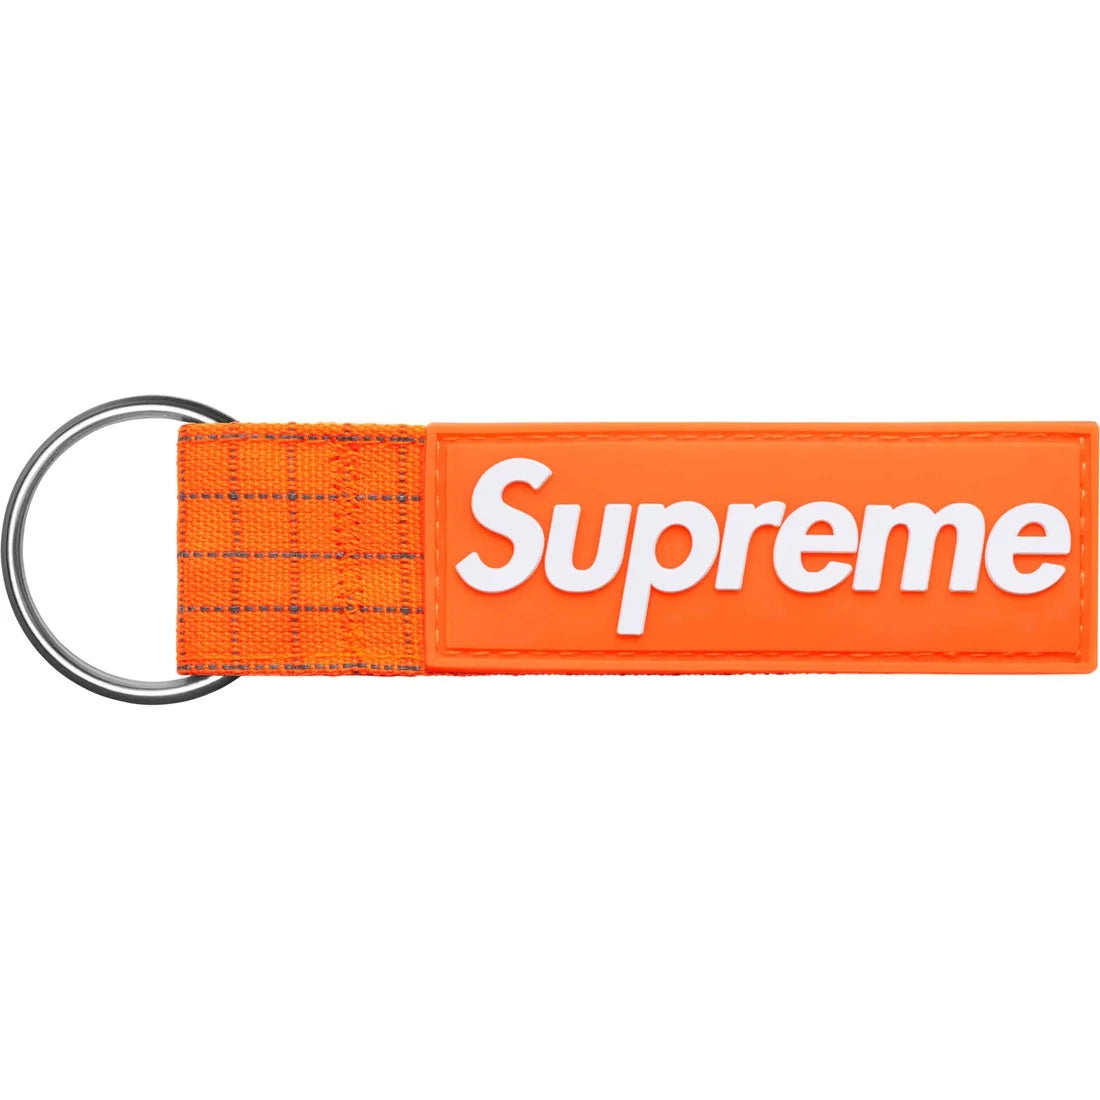 Supreme Ripstop Keychain Orange